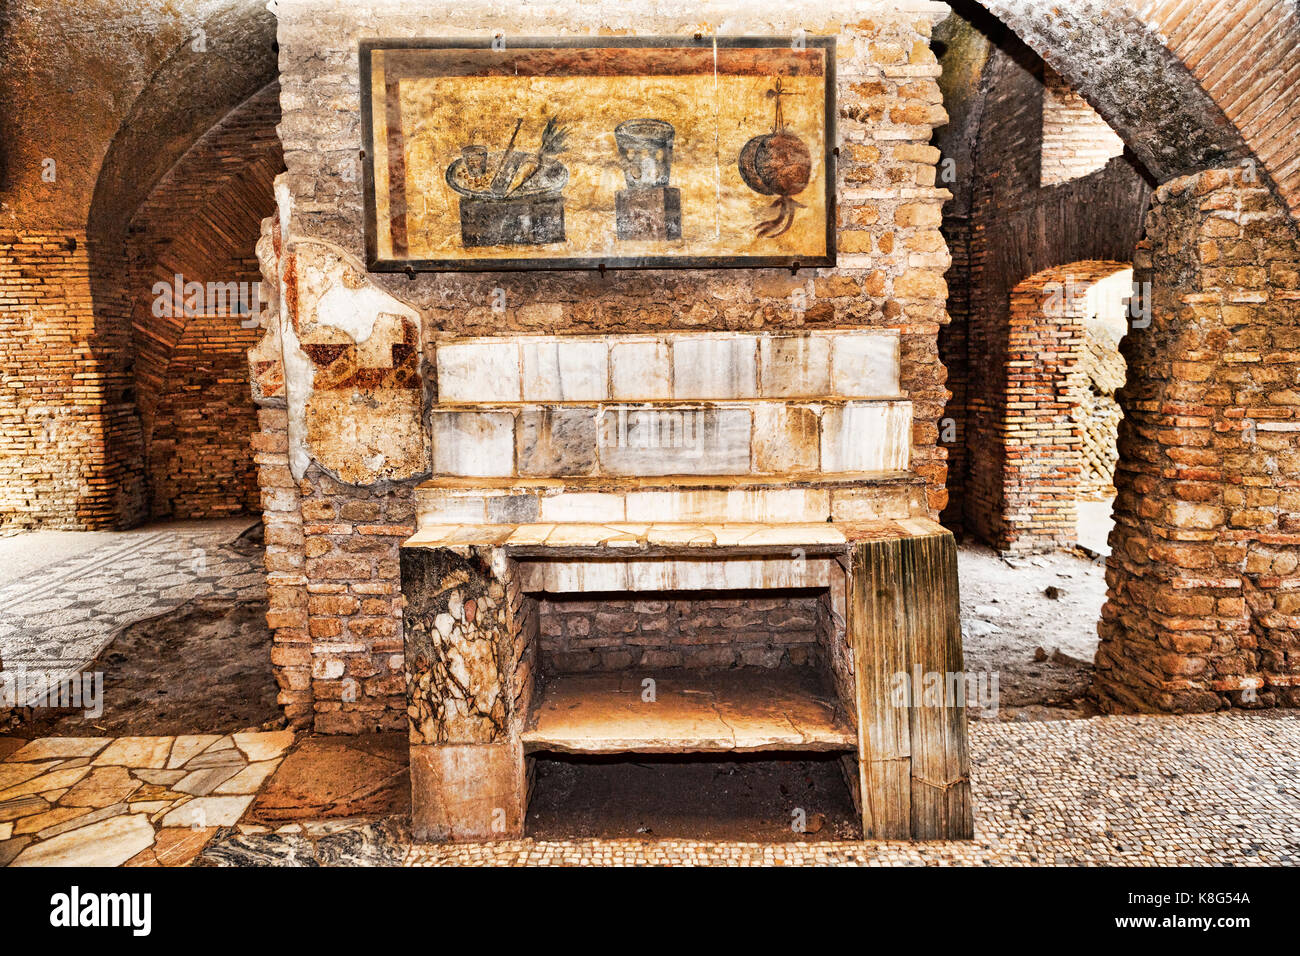 Interior del caseggiato del termopolio : estante de mármol coronada con still life decorativos frescos - Ostia Antica - Roma, Italia Foto de stock